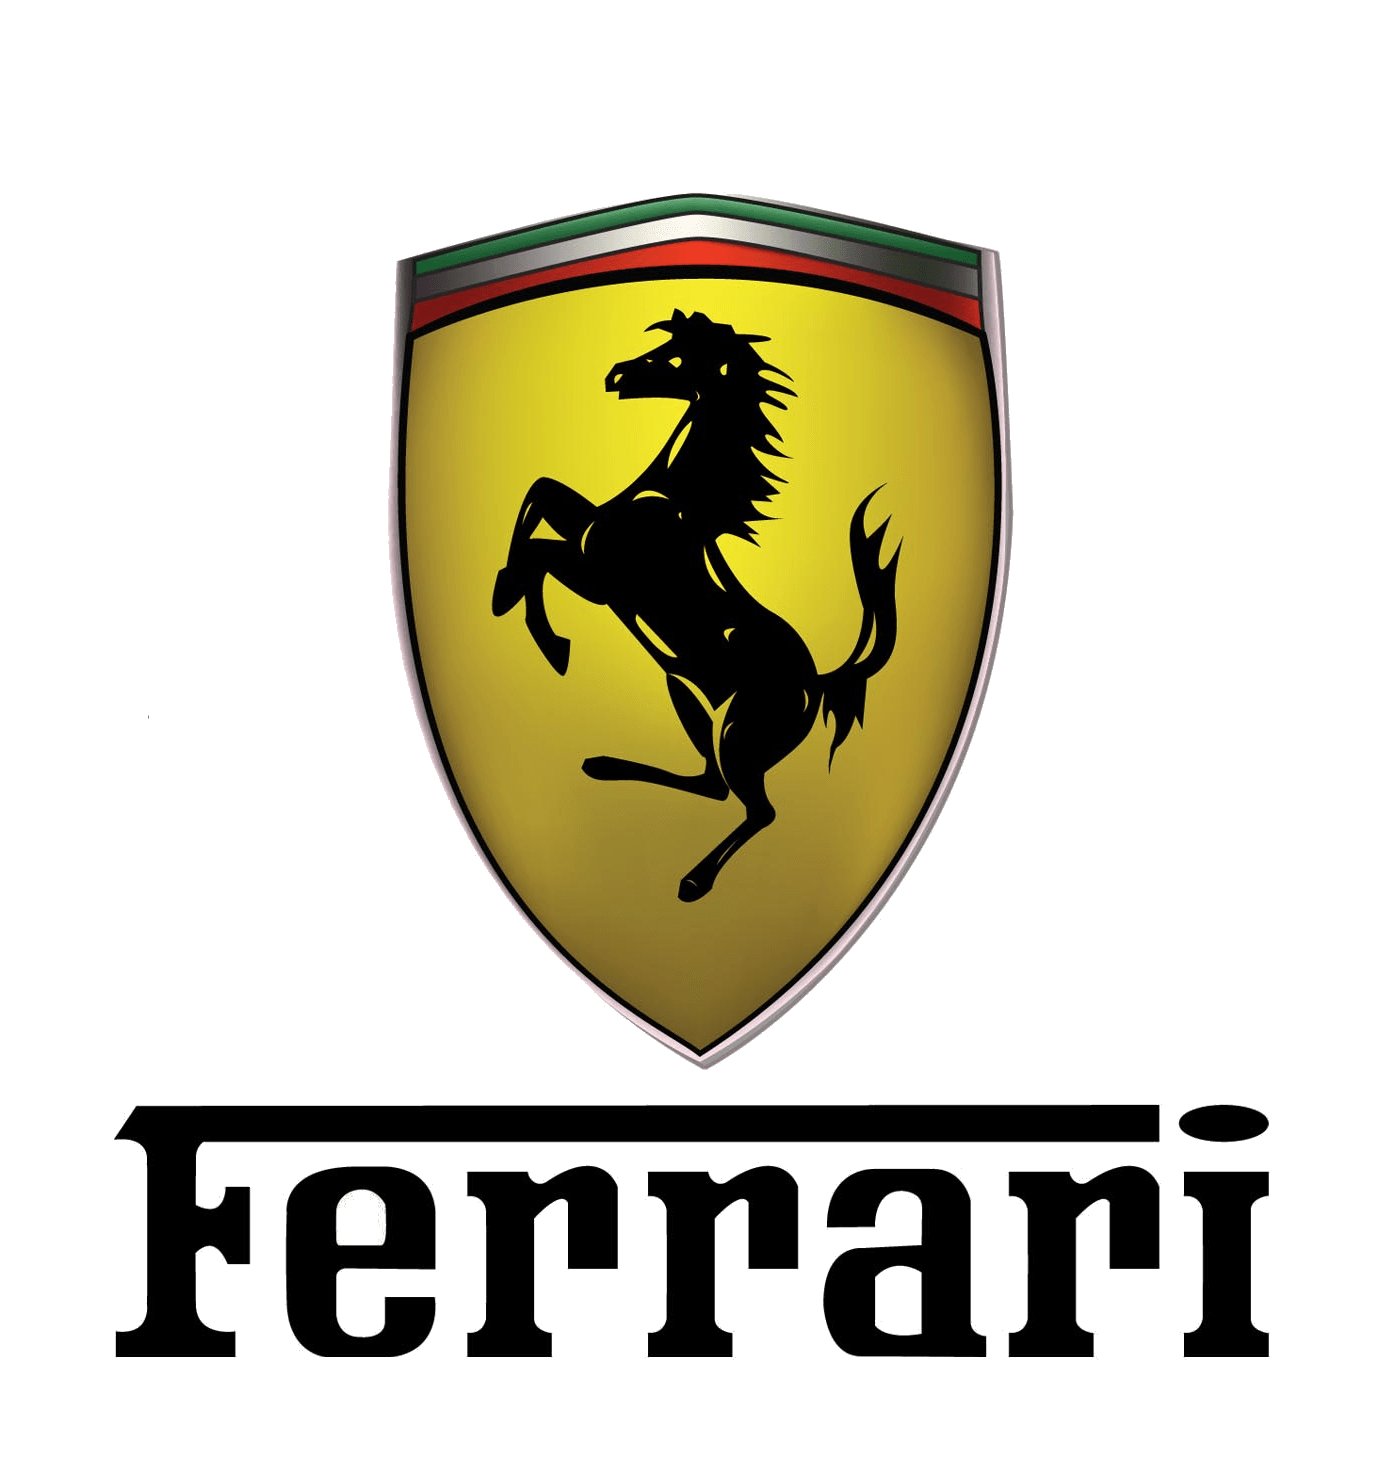 Ferrari Logo PNG Image HD pngteam.com